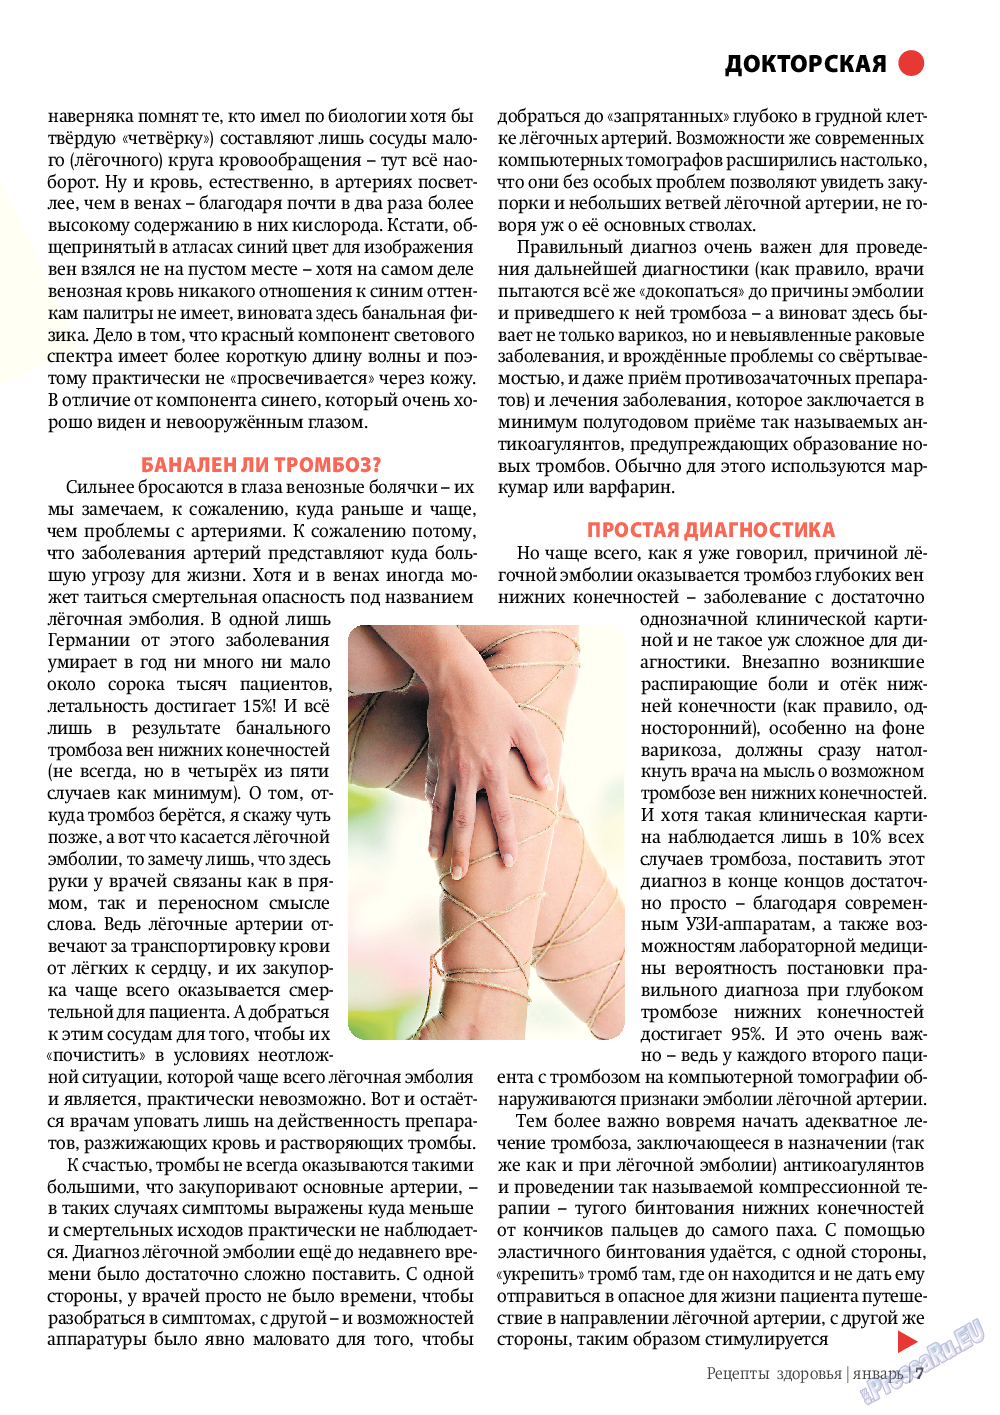 Рецепты здоровья (журнал). 2012 год, номер 1, стр. 7